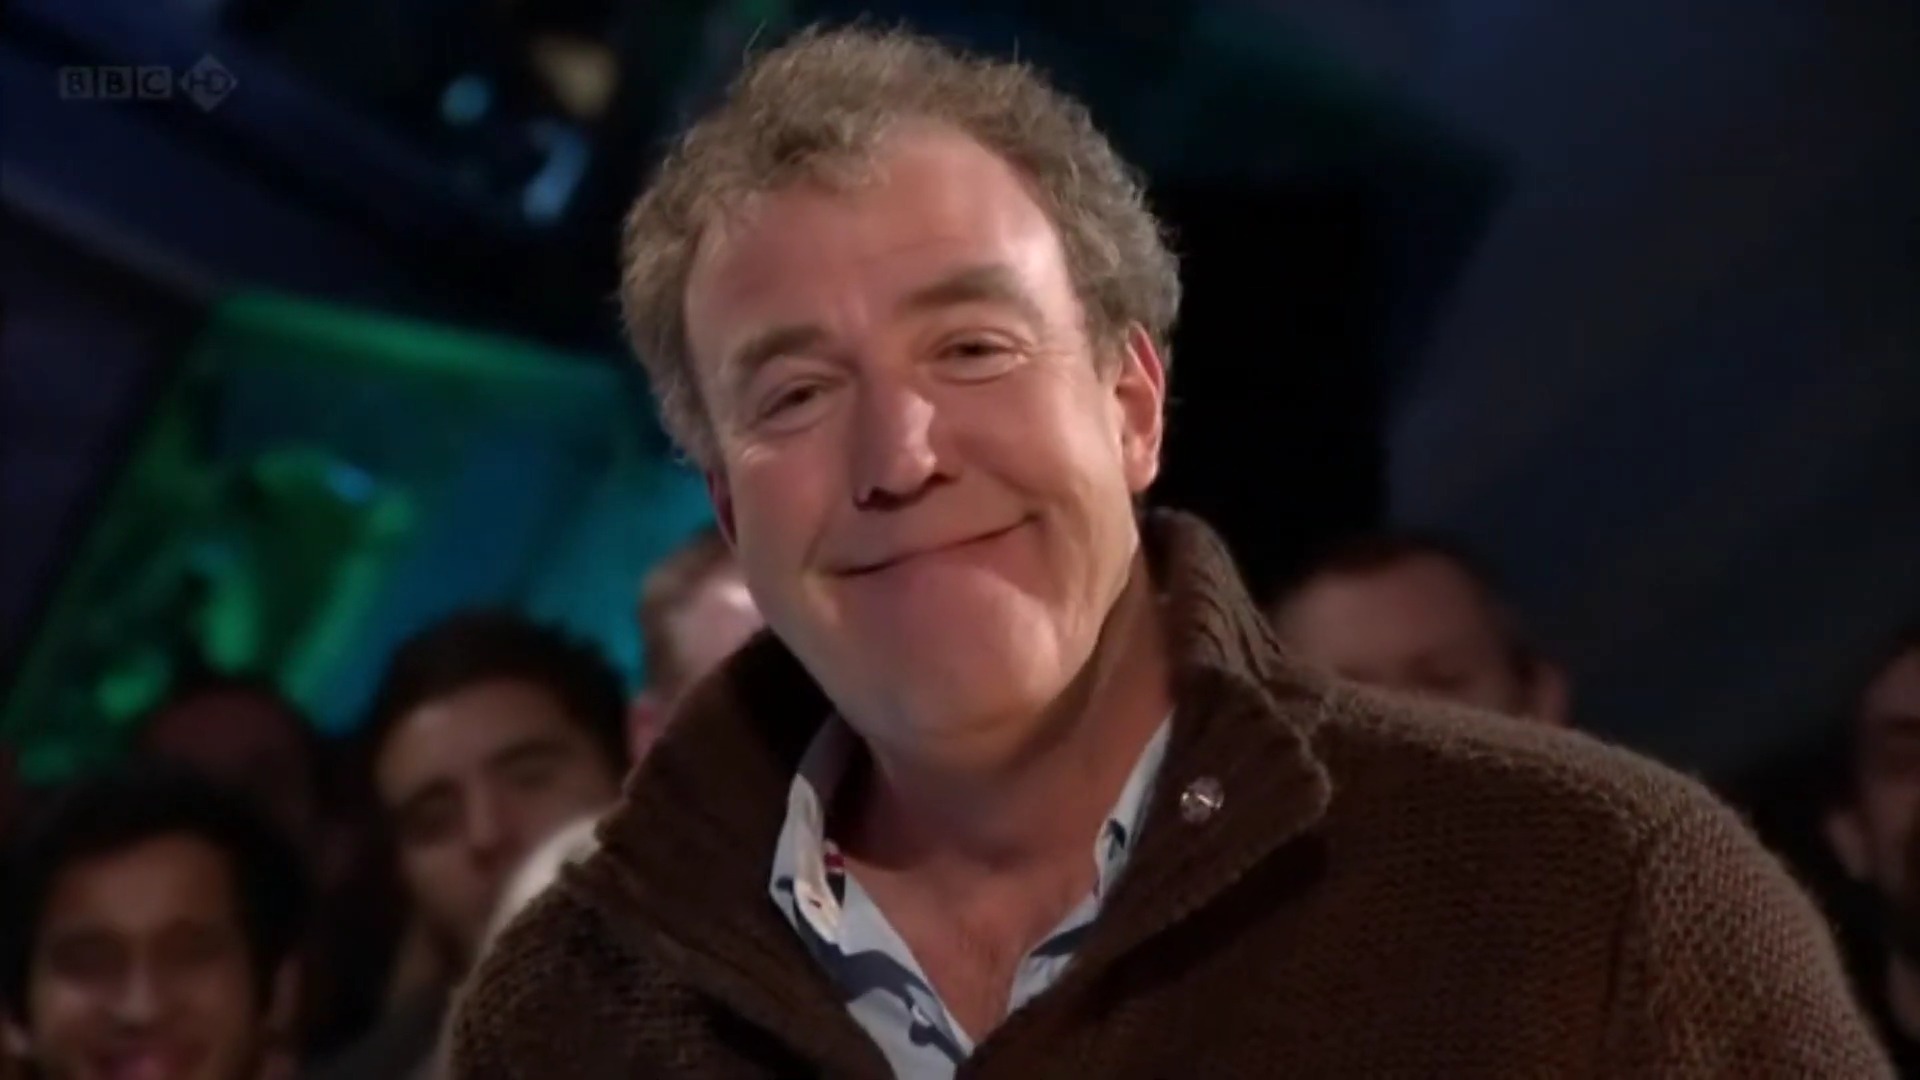 Jeremy Clarkson's infamous smug face